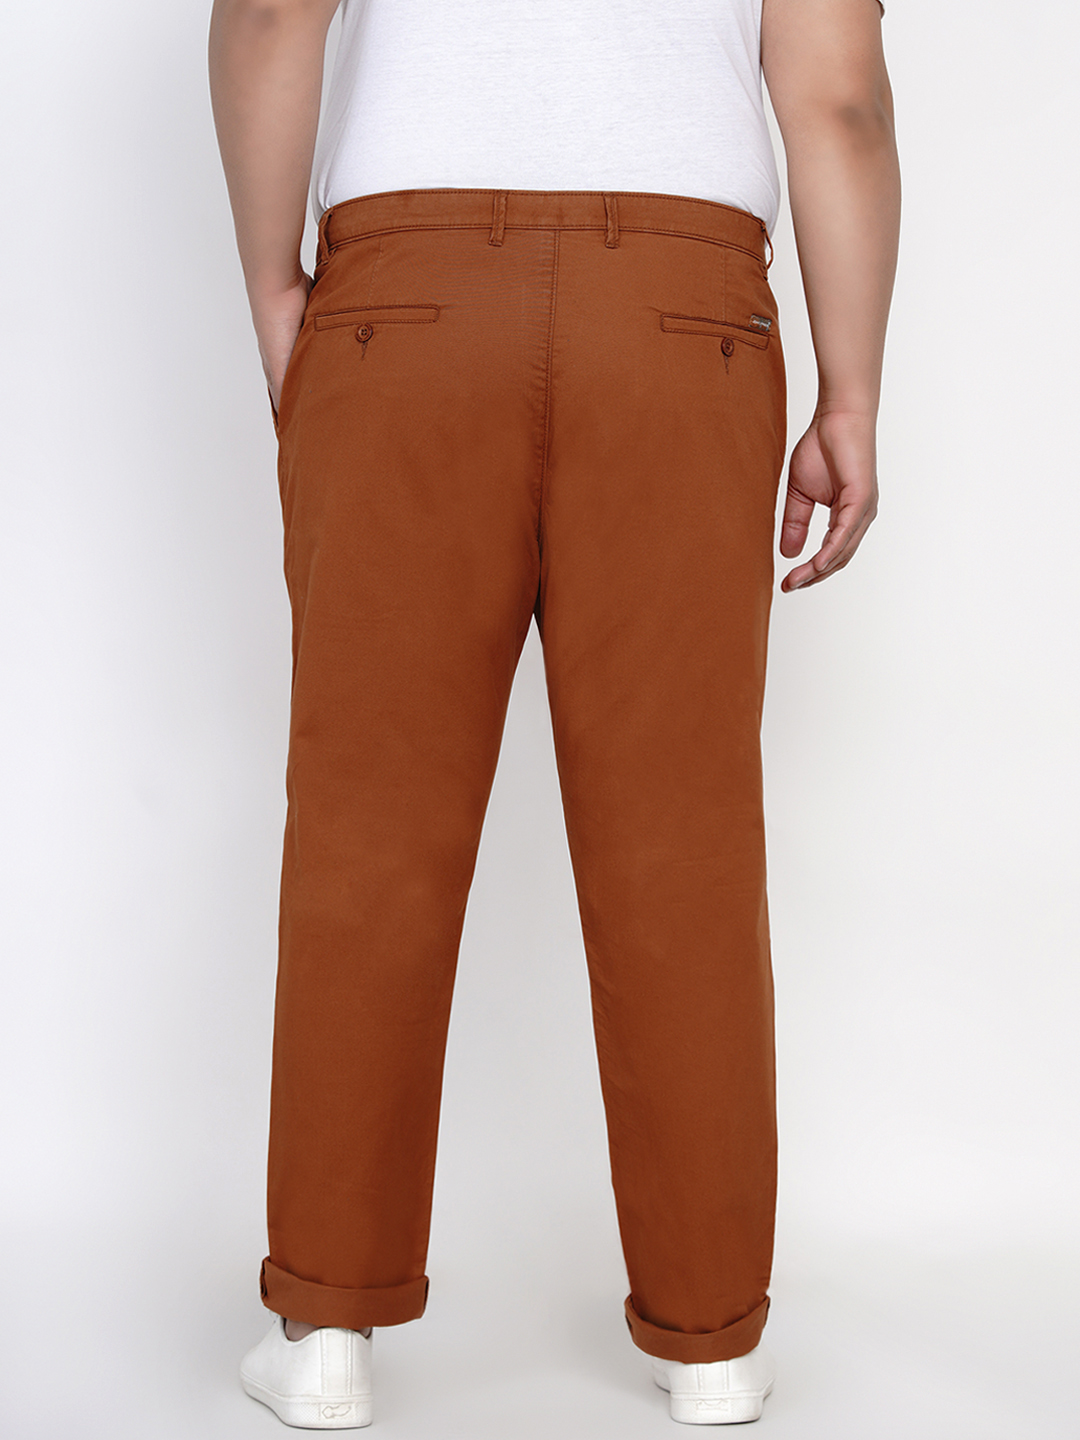 bottomwear/trousers/JPTR2161F/jptr2161f-5.jpg